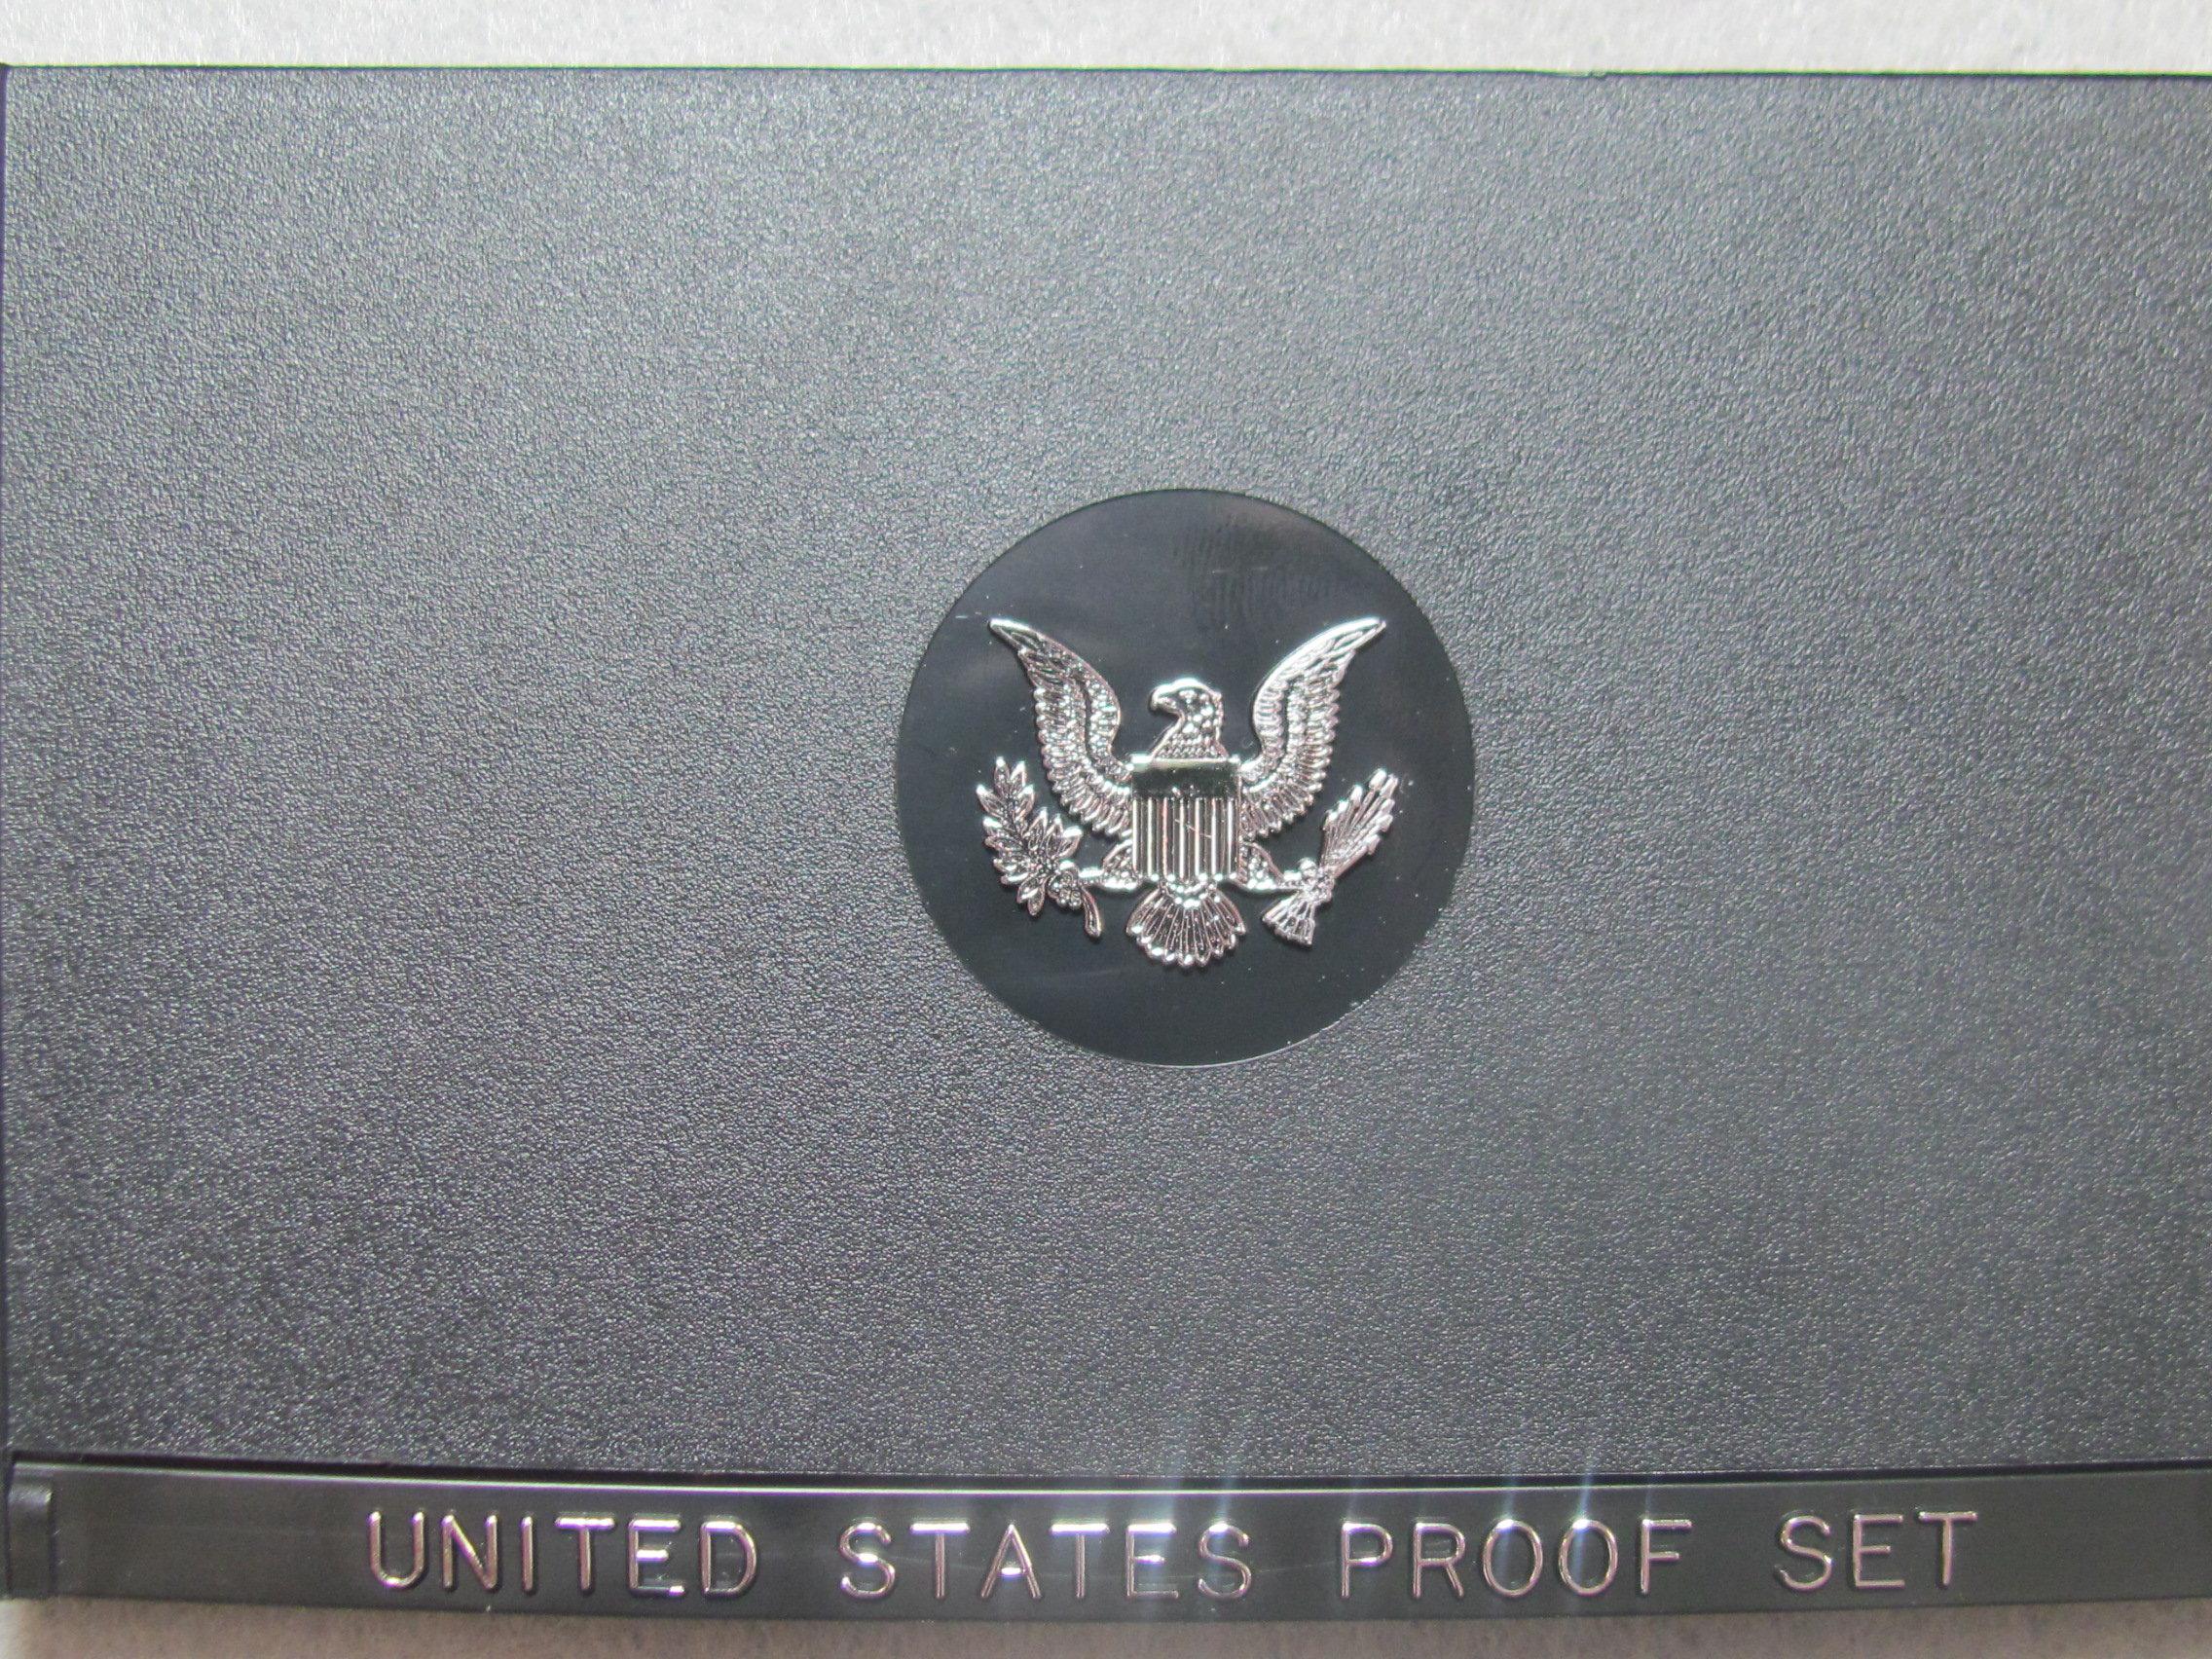 1979 US Proof Set - Black box - acrylic case